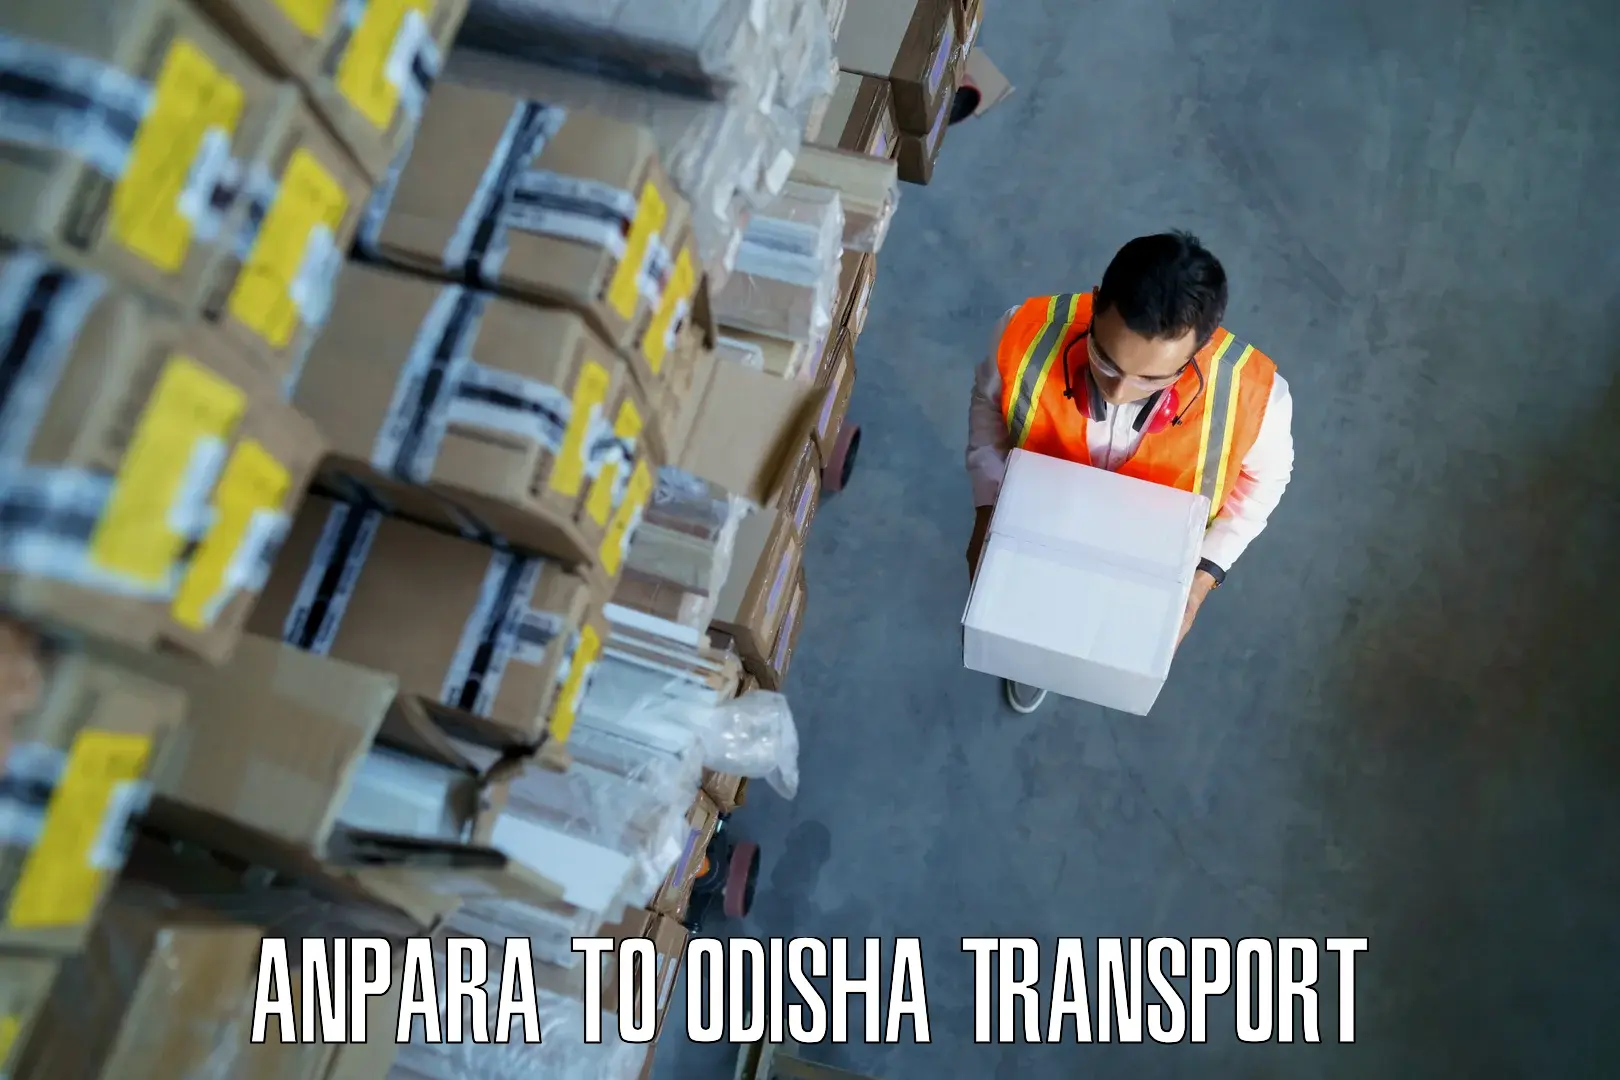 Daily parcel service transport Anpara to Kalahandi